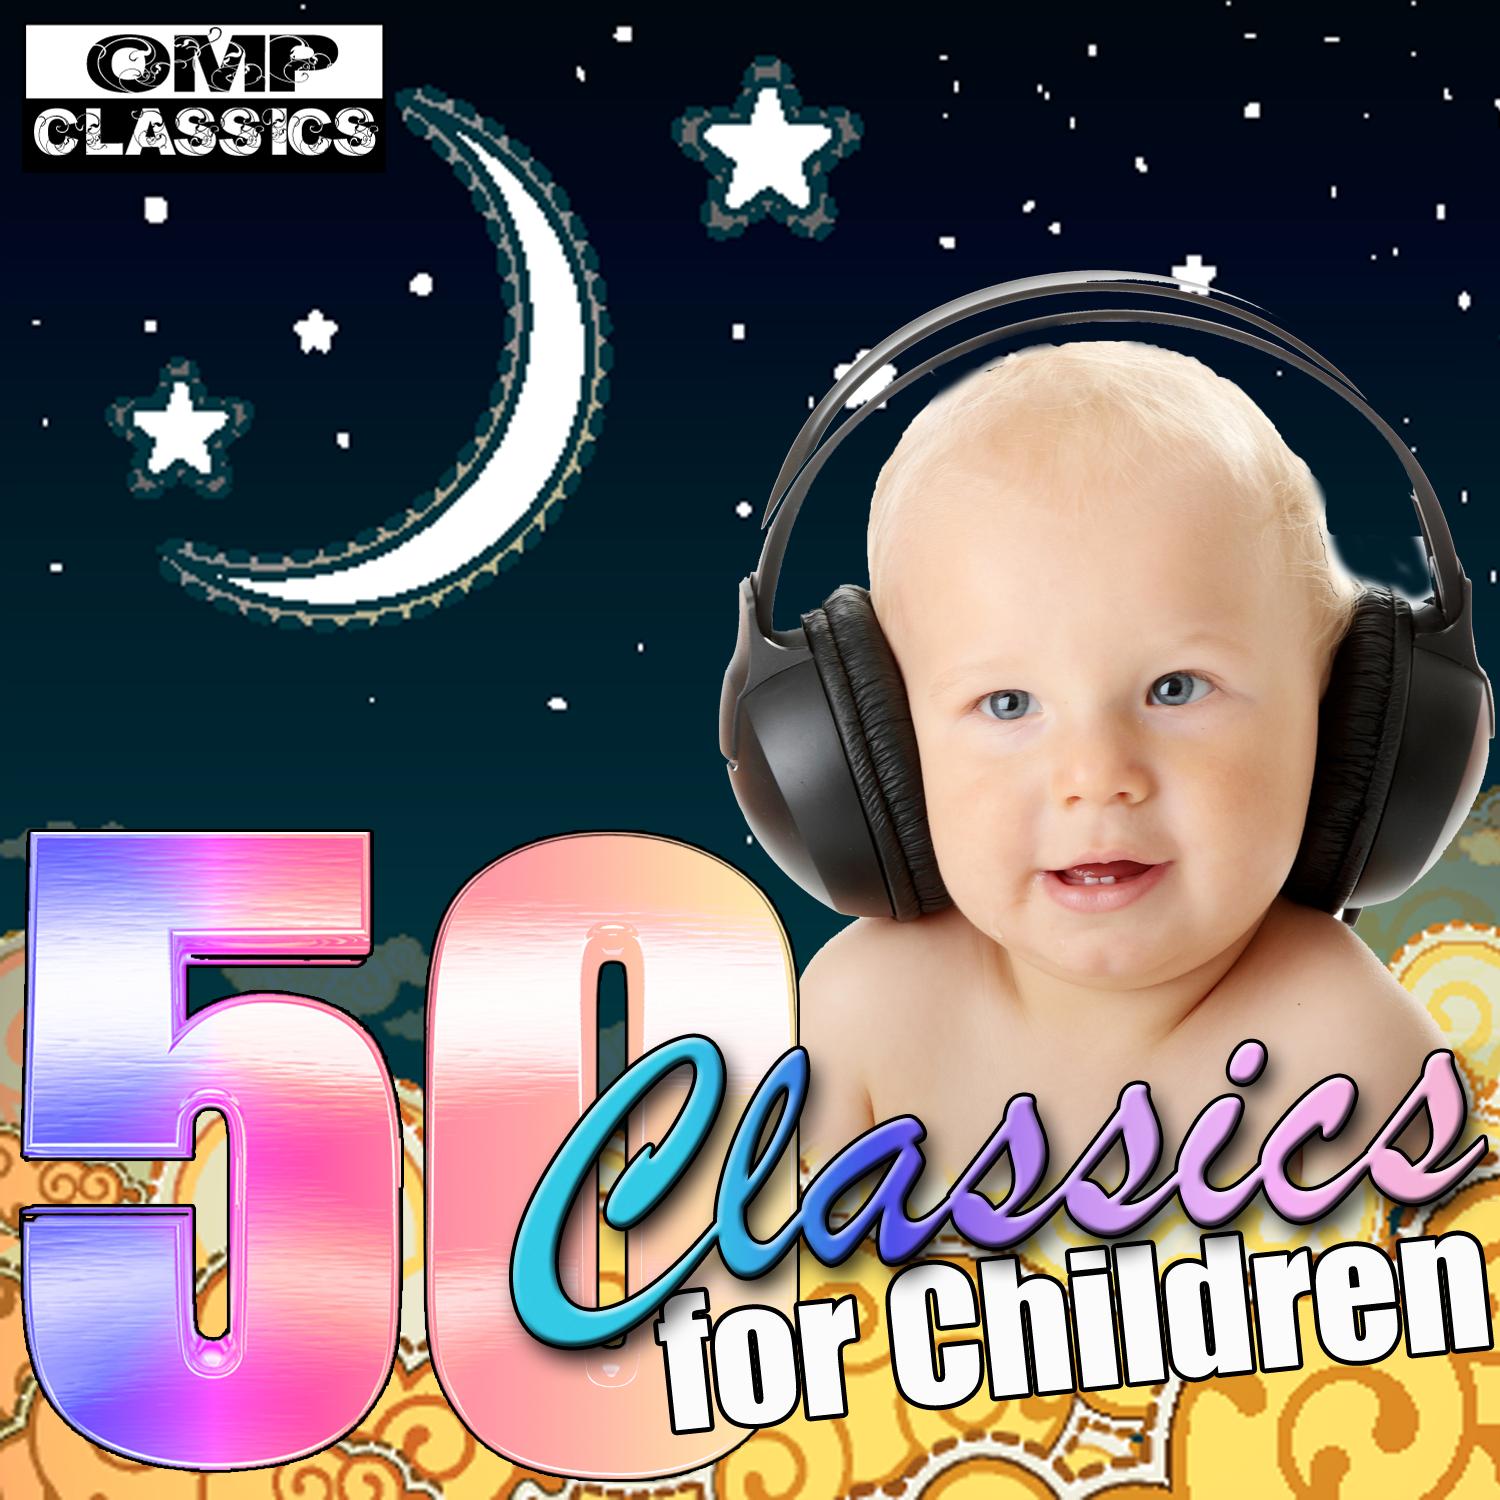 50 Classics for Children